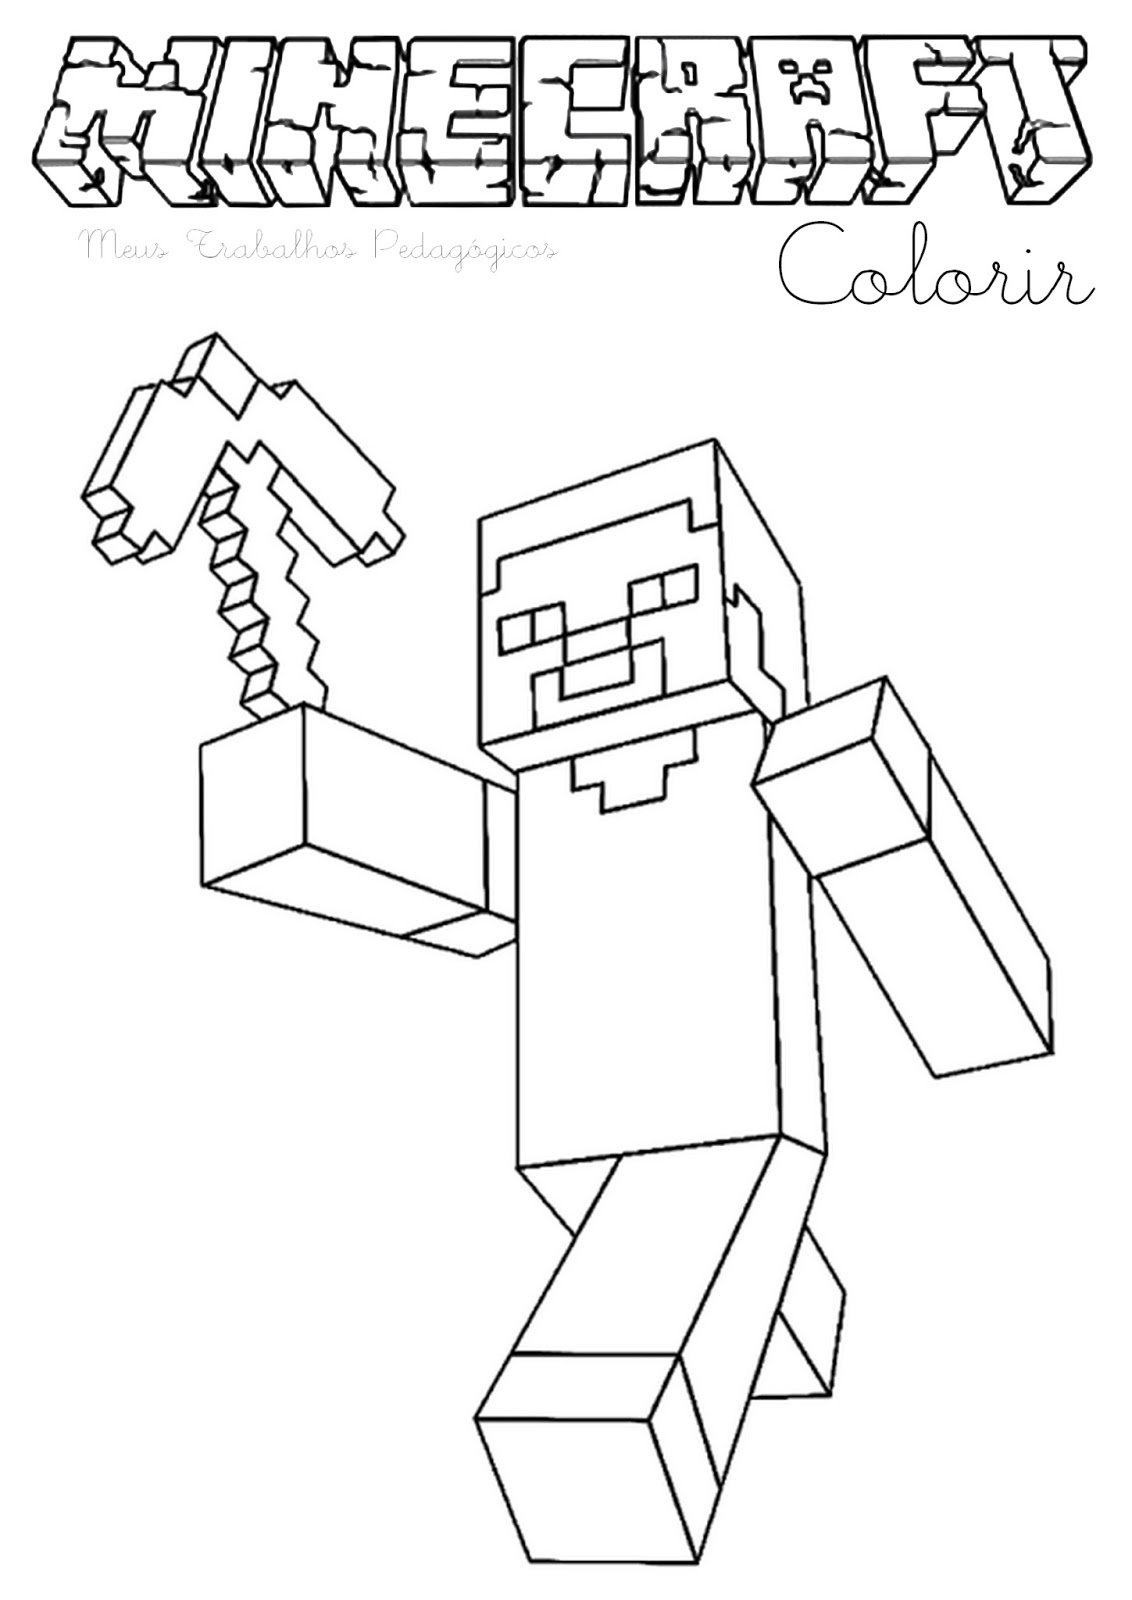 Desenhos de Minecraft para colorir e imprimir  Minecraft para colorir,  Desenhos para colorir minecraft, Desenhos minecraft